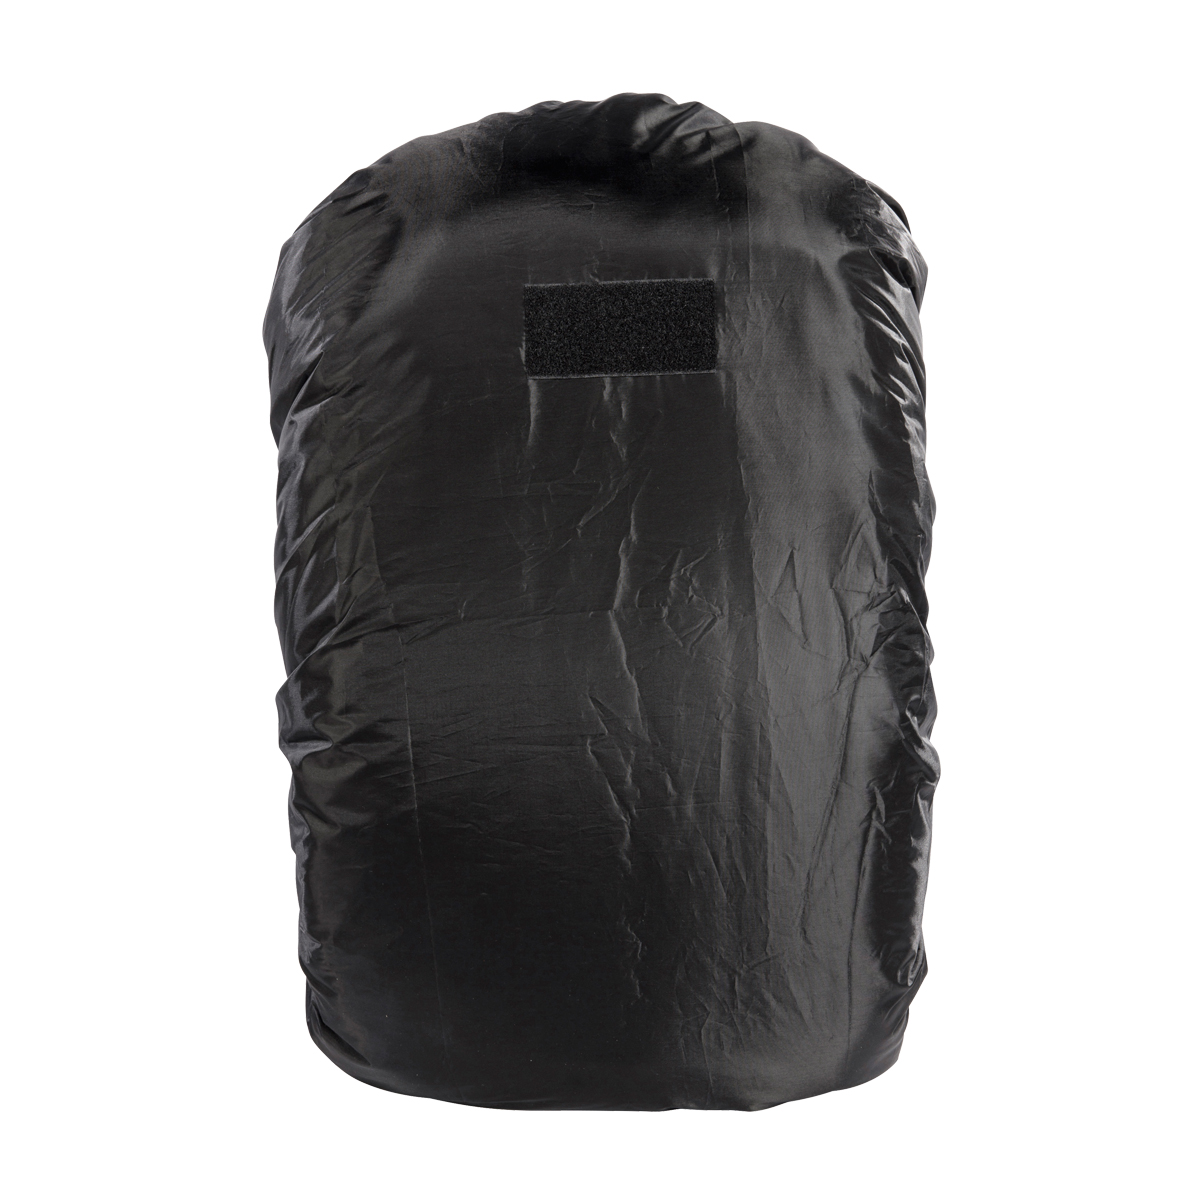 Produktbild von Tasmanian Tiger Raincover S, schwarz - Regenhülle für 30 - 40 Liter Rucksack